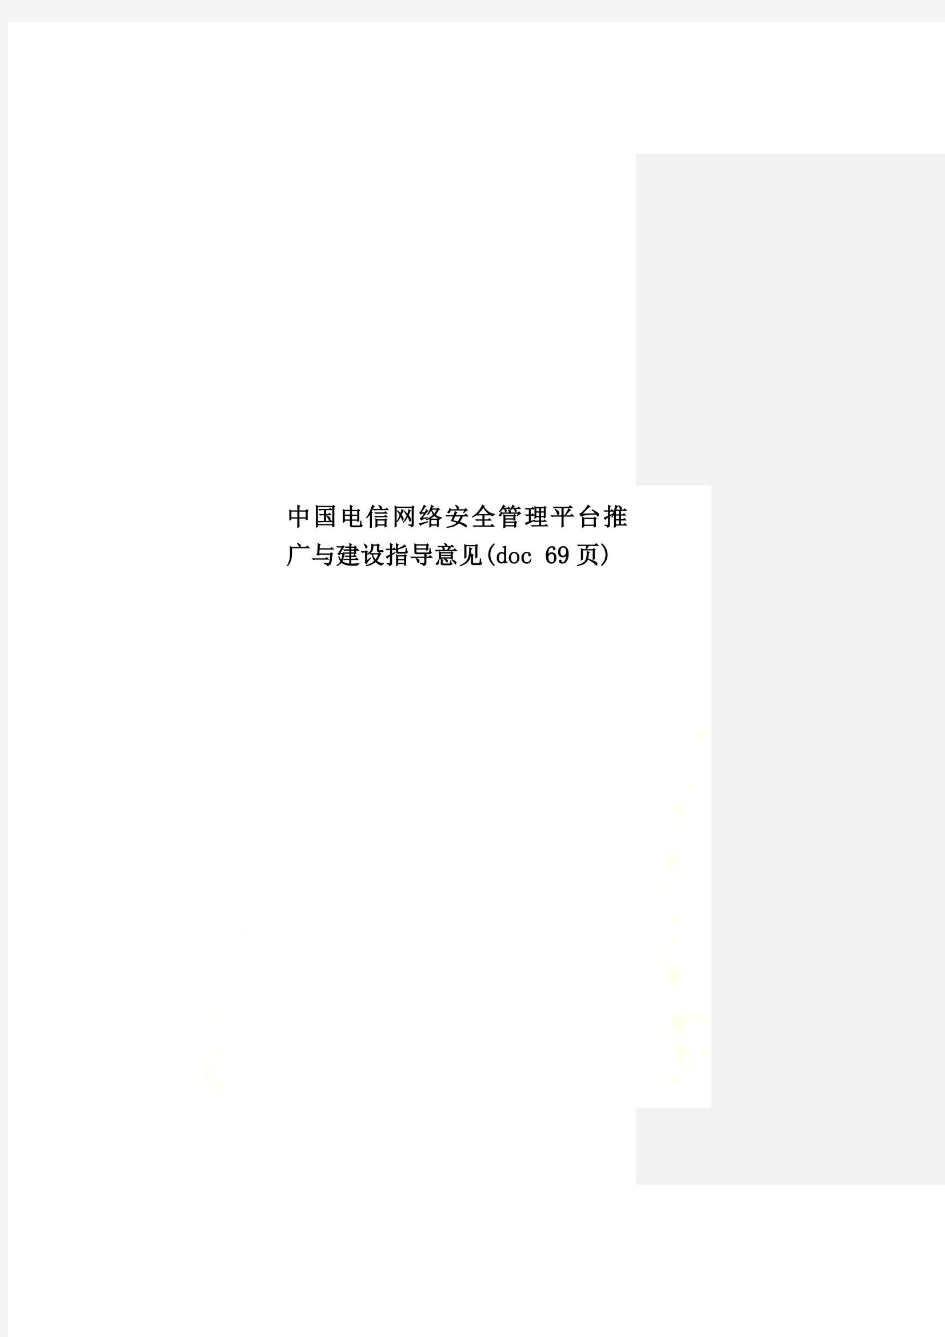 中国电信网络安全管理平台推广与建设指导意见(doc 69页)